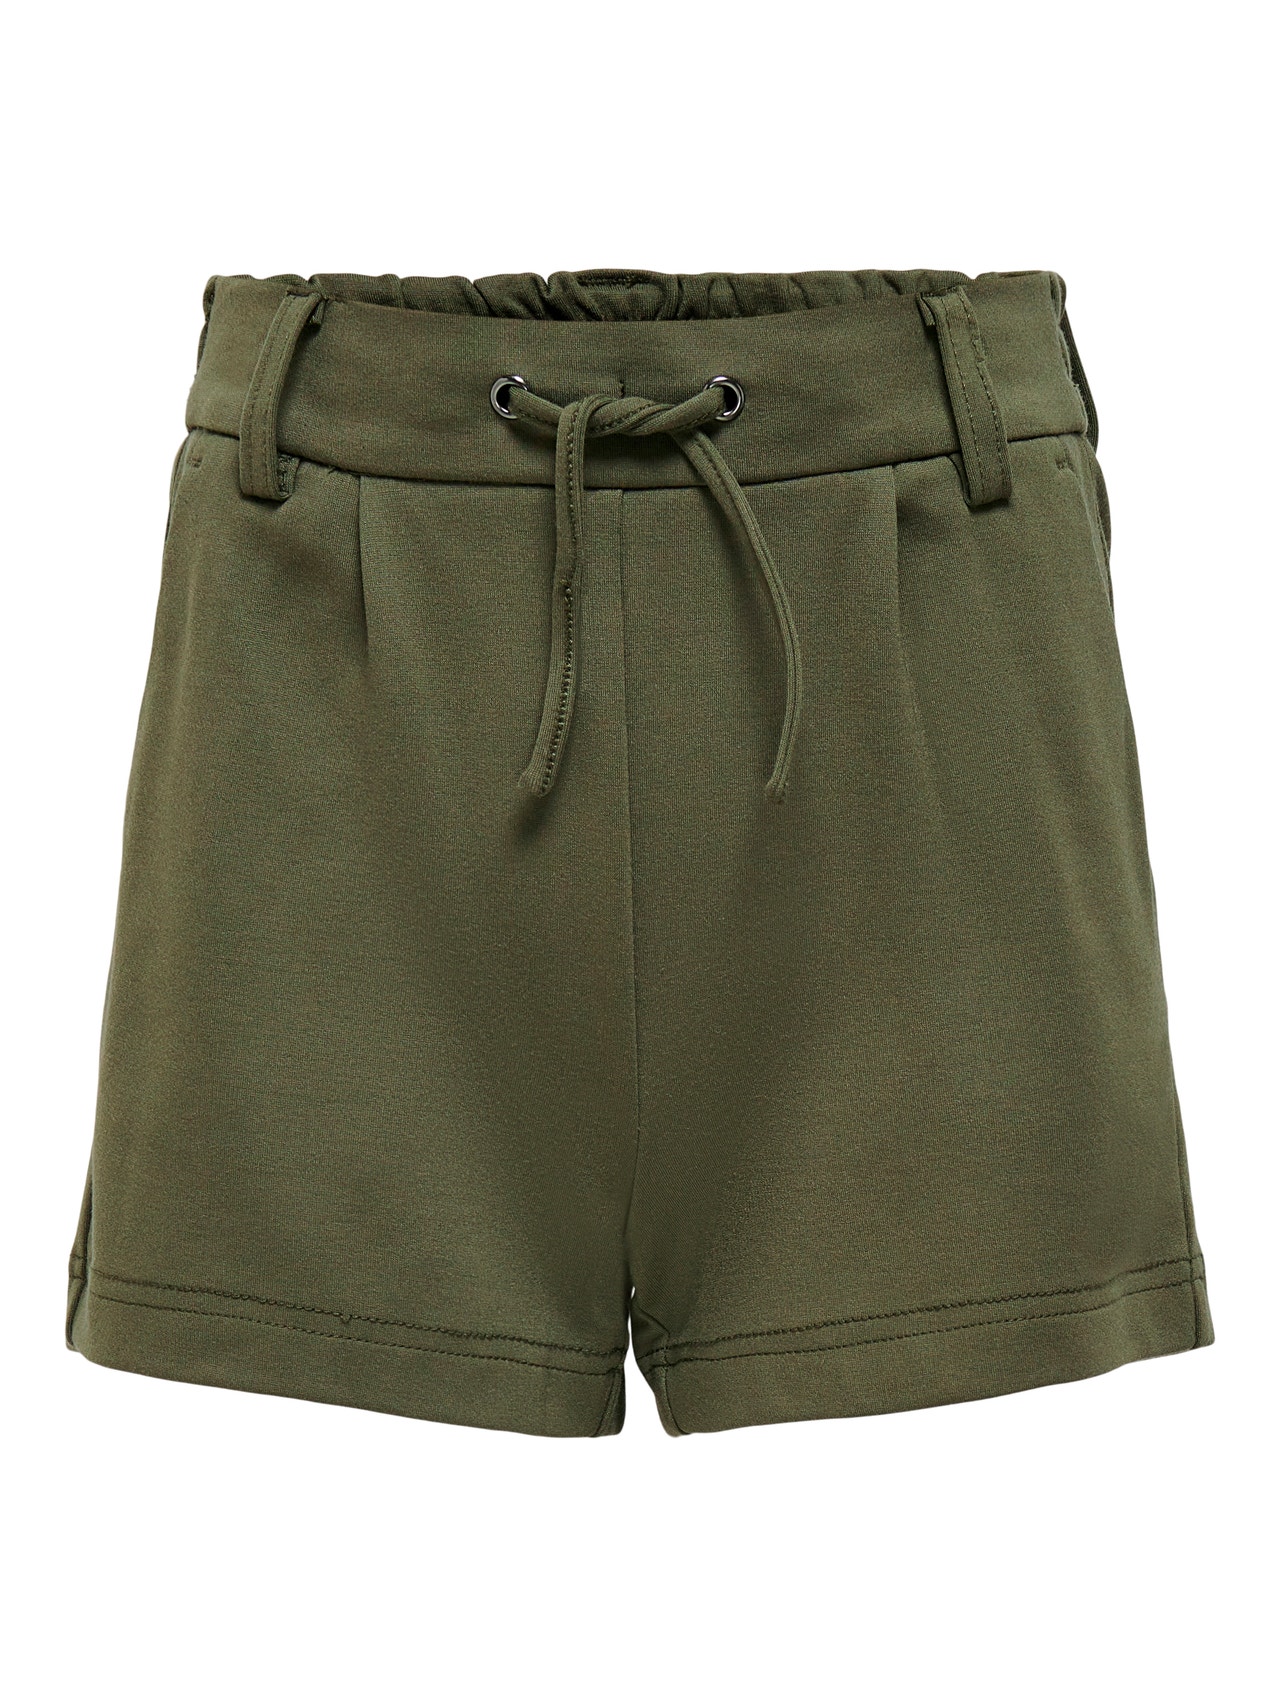 ONLY Poptrash Shorts -Kalamata - 15205049